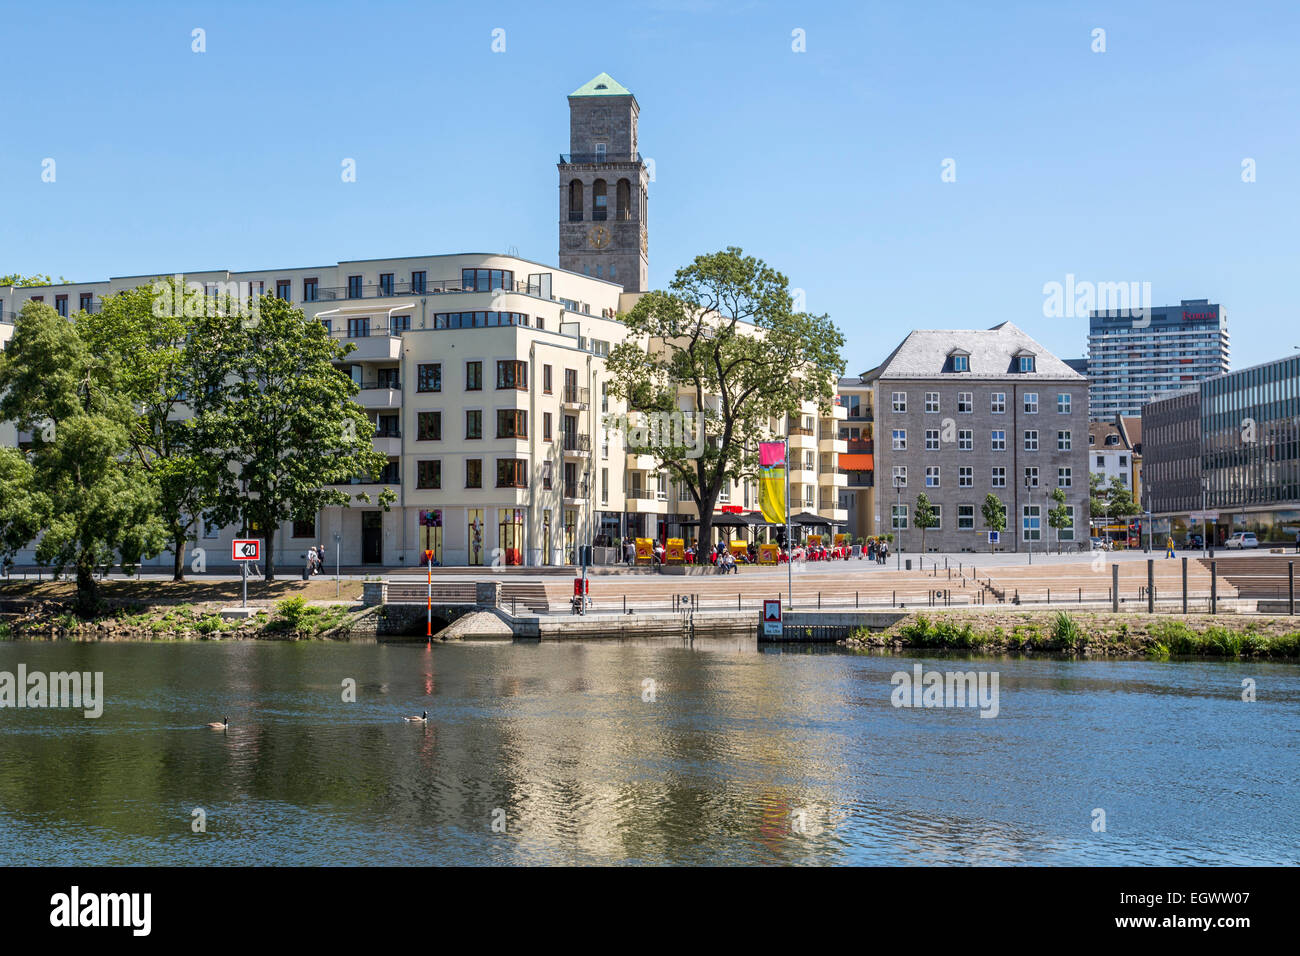 Mülheim an der Ruhr, Stadtentwicklung Projekt "Ruhrbania" im Zentrum von Hafen, Gastfreundschaft, Wohn- und Geschäftshäuser Stockfoto